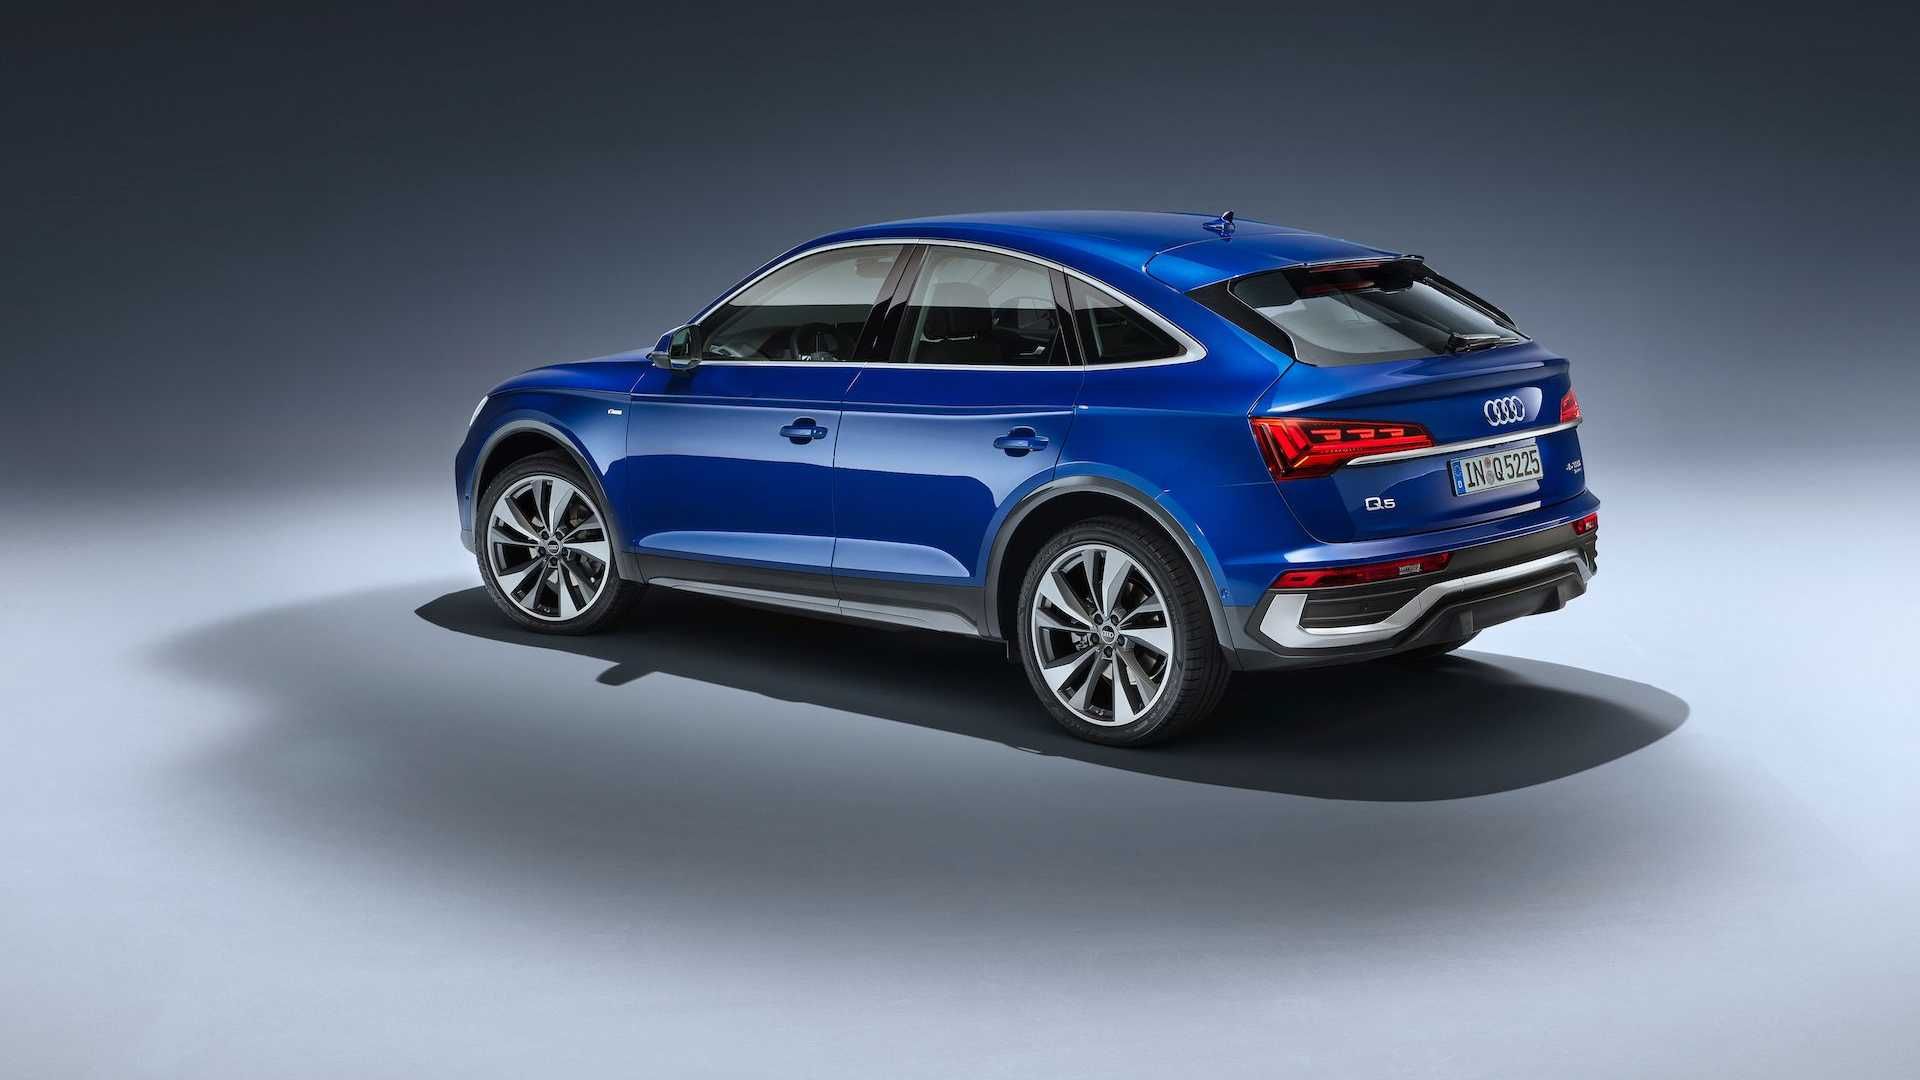 مرجع متخصصين ايران نماي عقب خودرو كراس اور آئودي كيو 5 اسپرت بك / 2021 Audi Q5 Sportback آبي رنگ